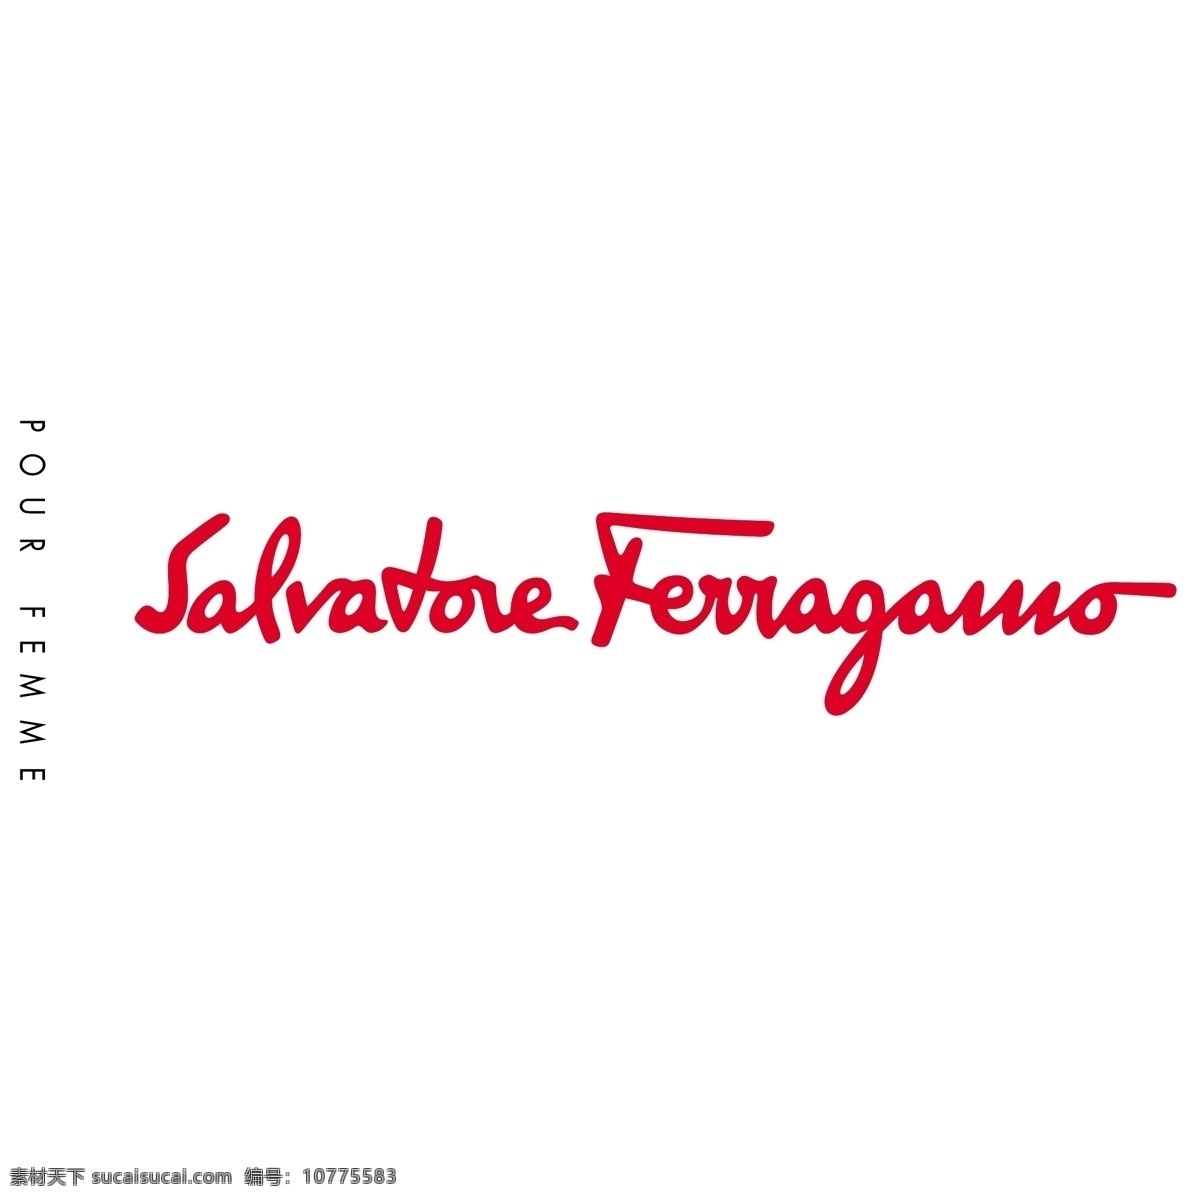 塞尔 瓦托 菲 拉格 慕 自由 ferragamo 标识 psd源文件 logo设计